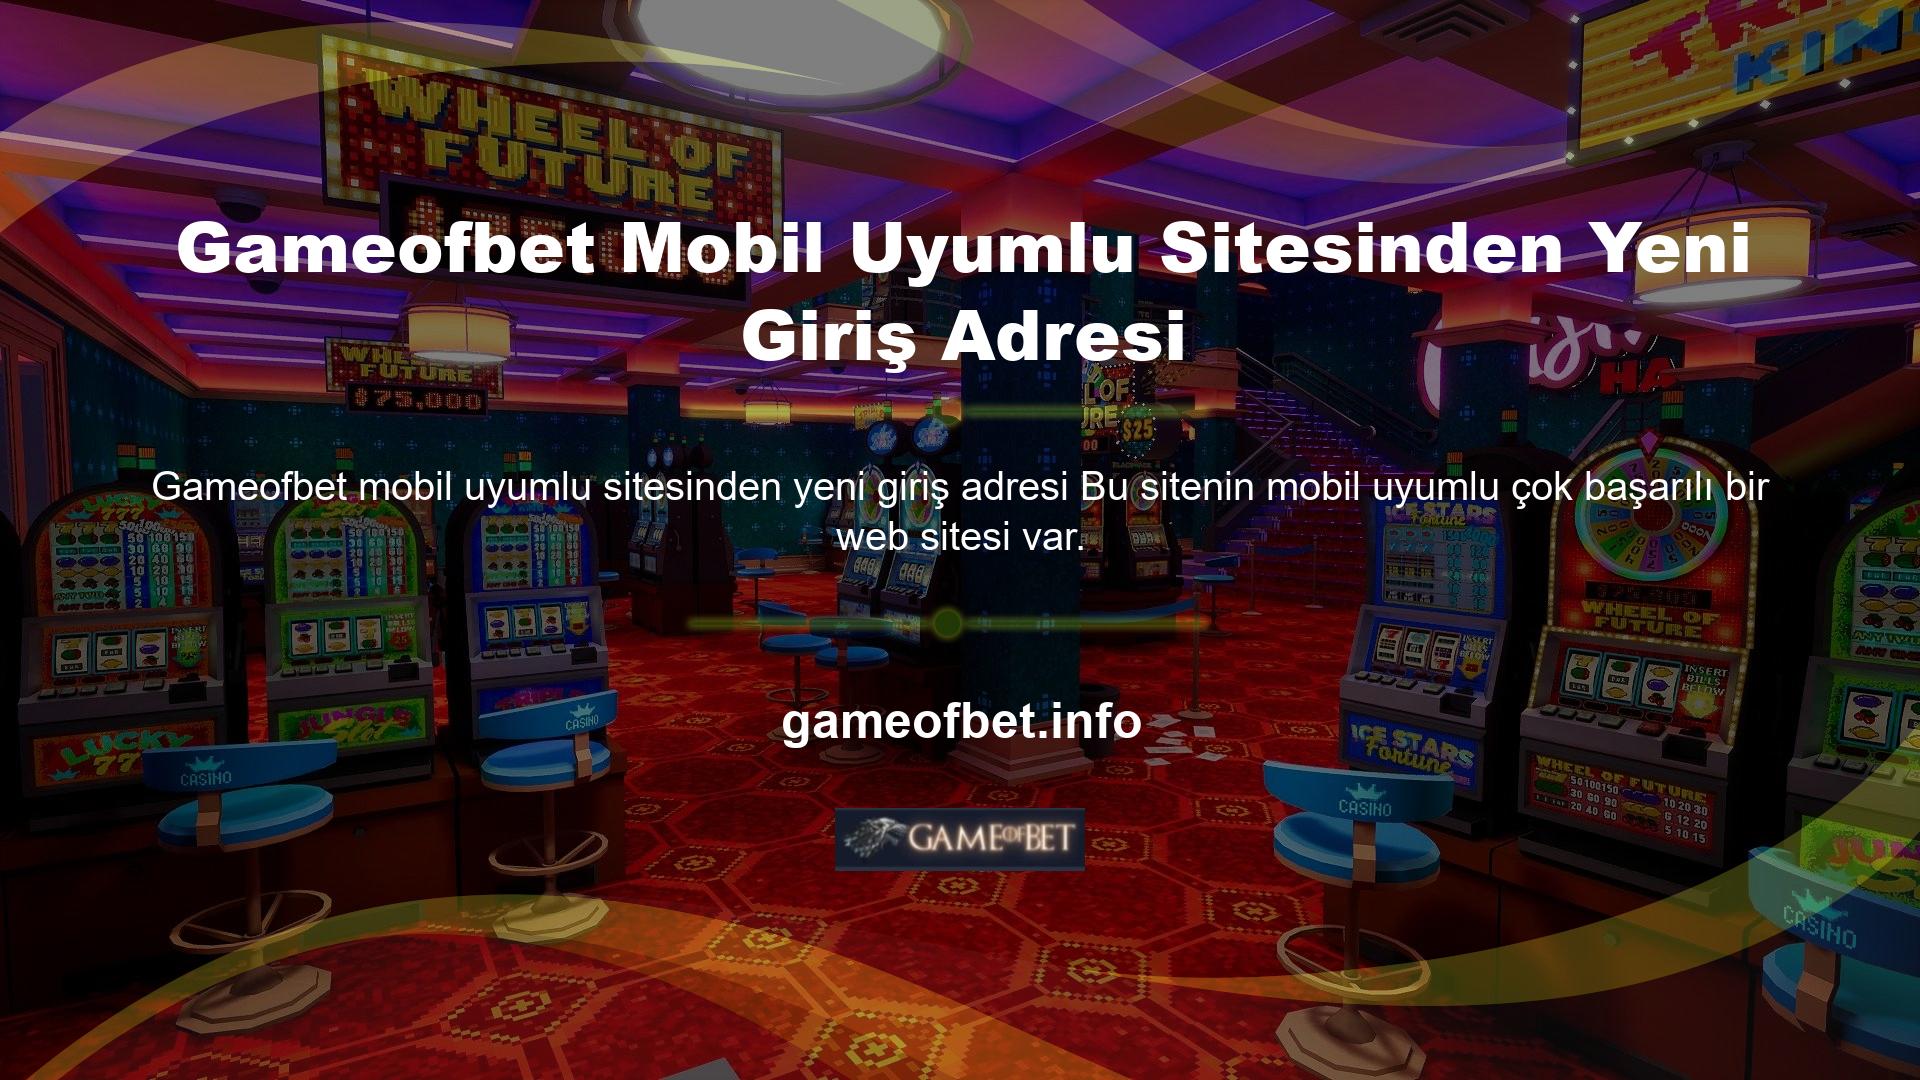 Mobil uyumlu Gameofbet sitesinin yeni giriş adresini kullanarak üyeler bu siteden faydalanabilmektedir